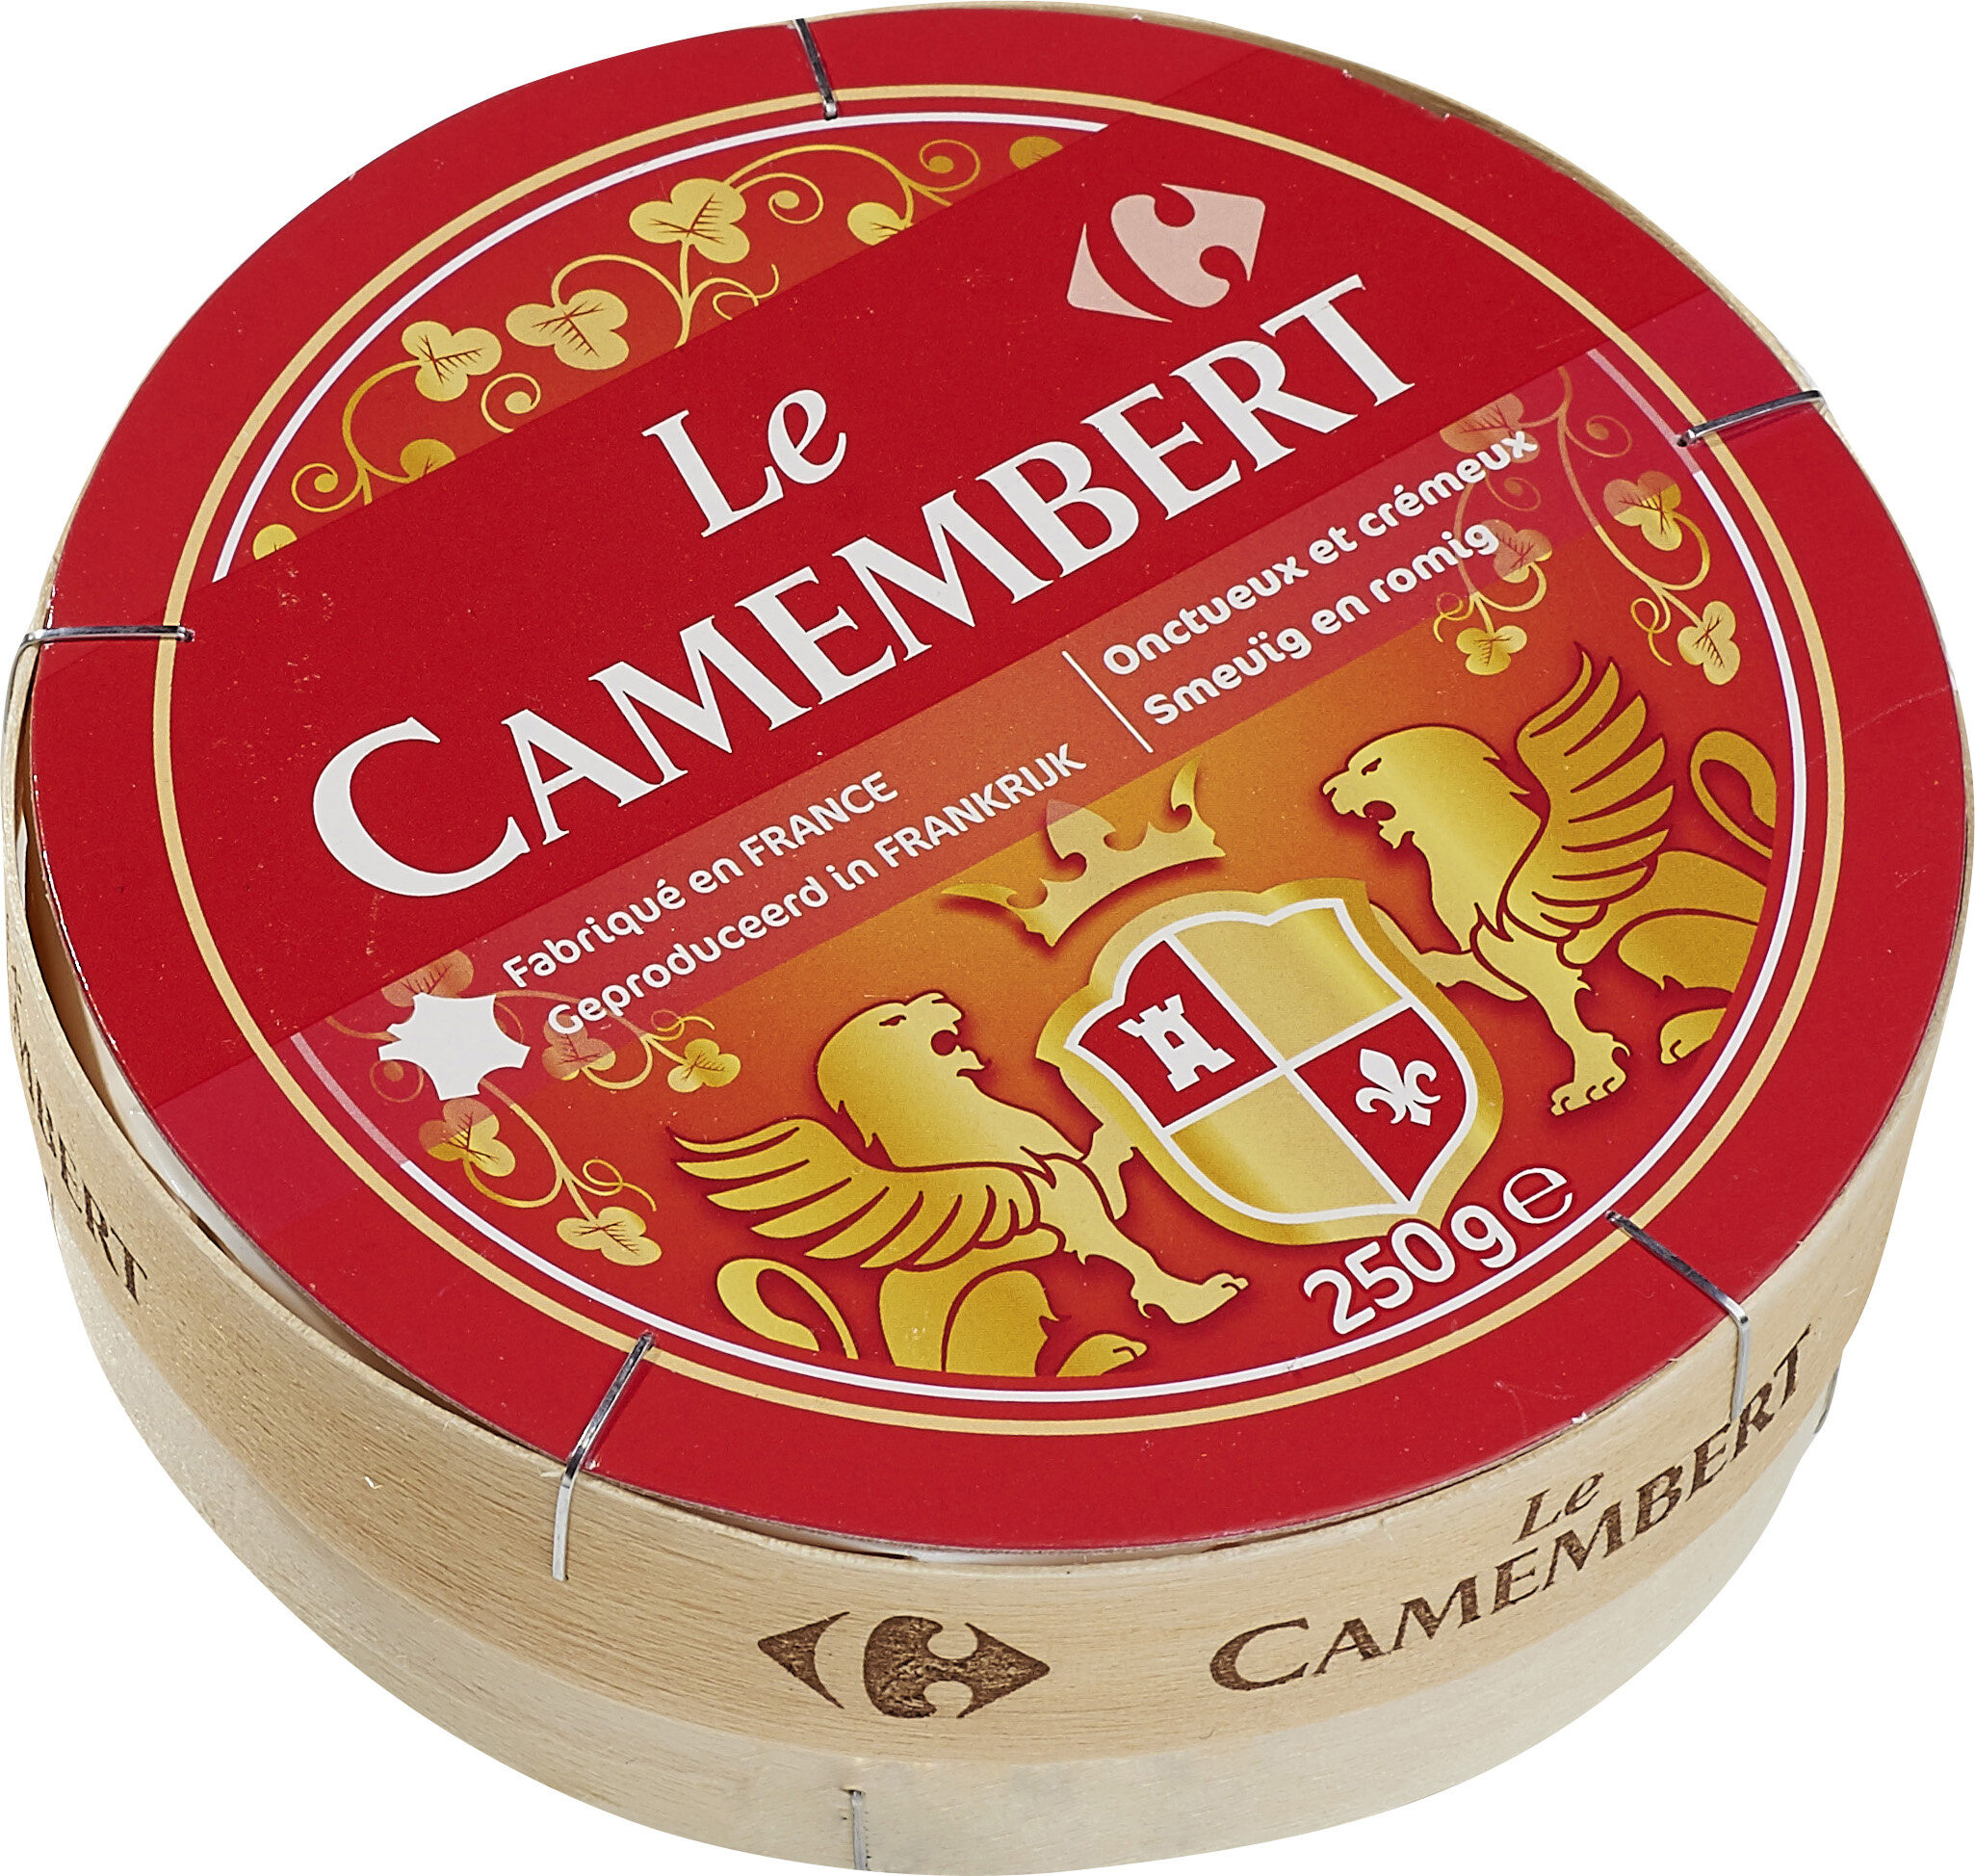 Le Camembert - Fromage à patte molle au lait pasteurisé - Producto - fr